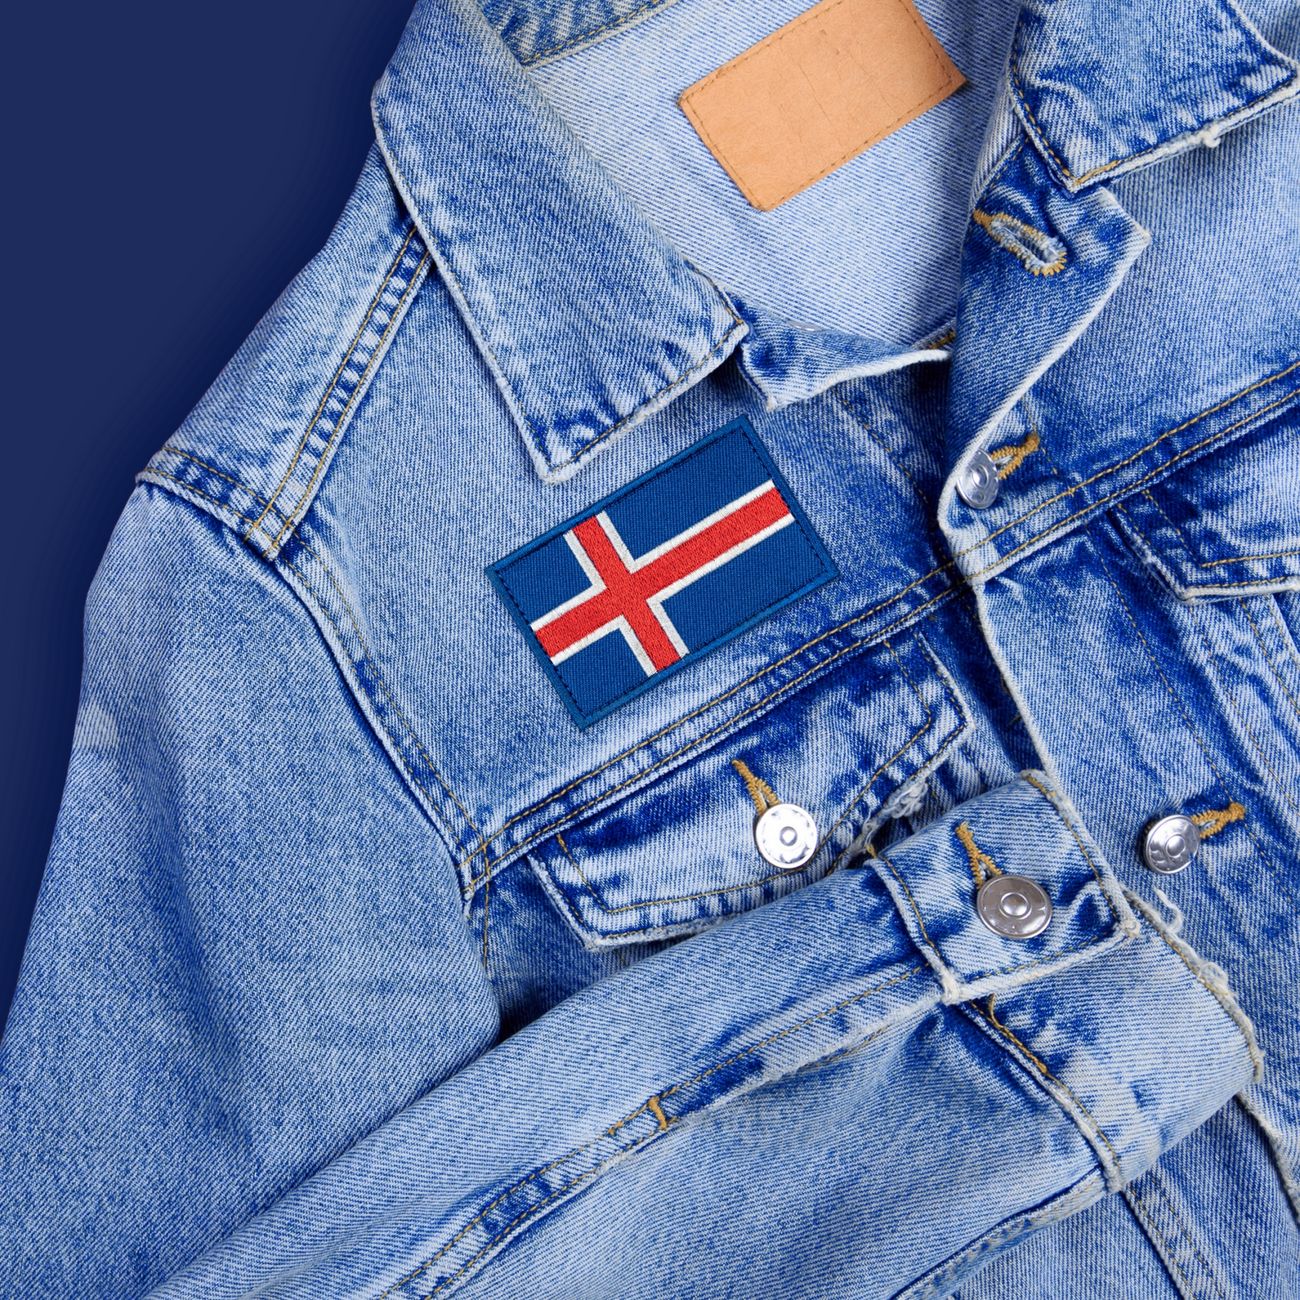 tygmarke-islandska-flaggan-92018-2